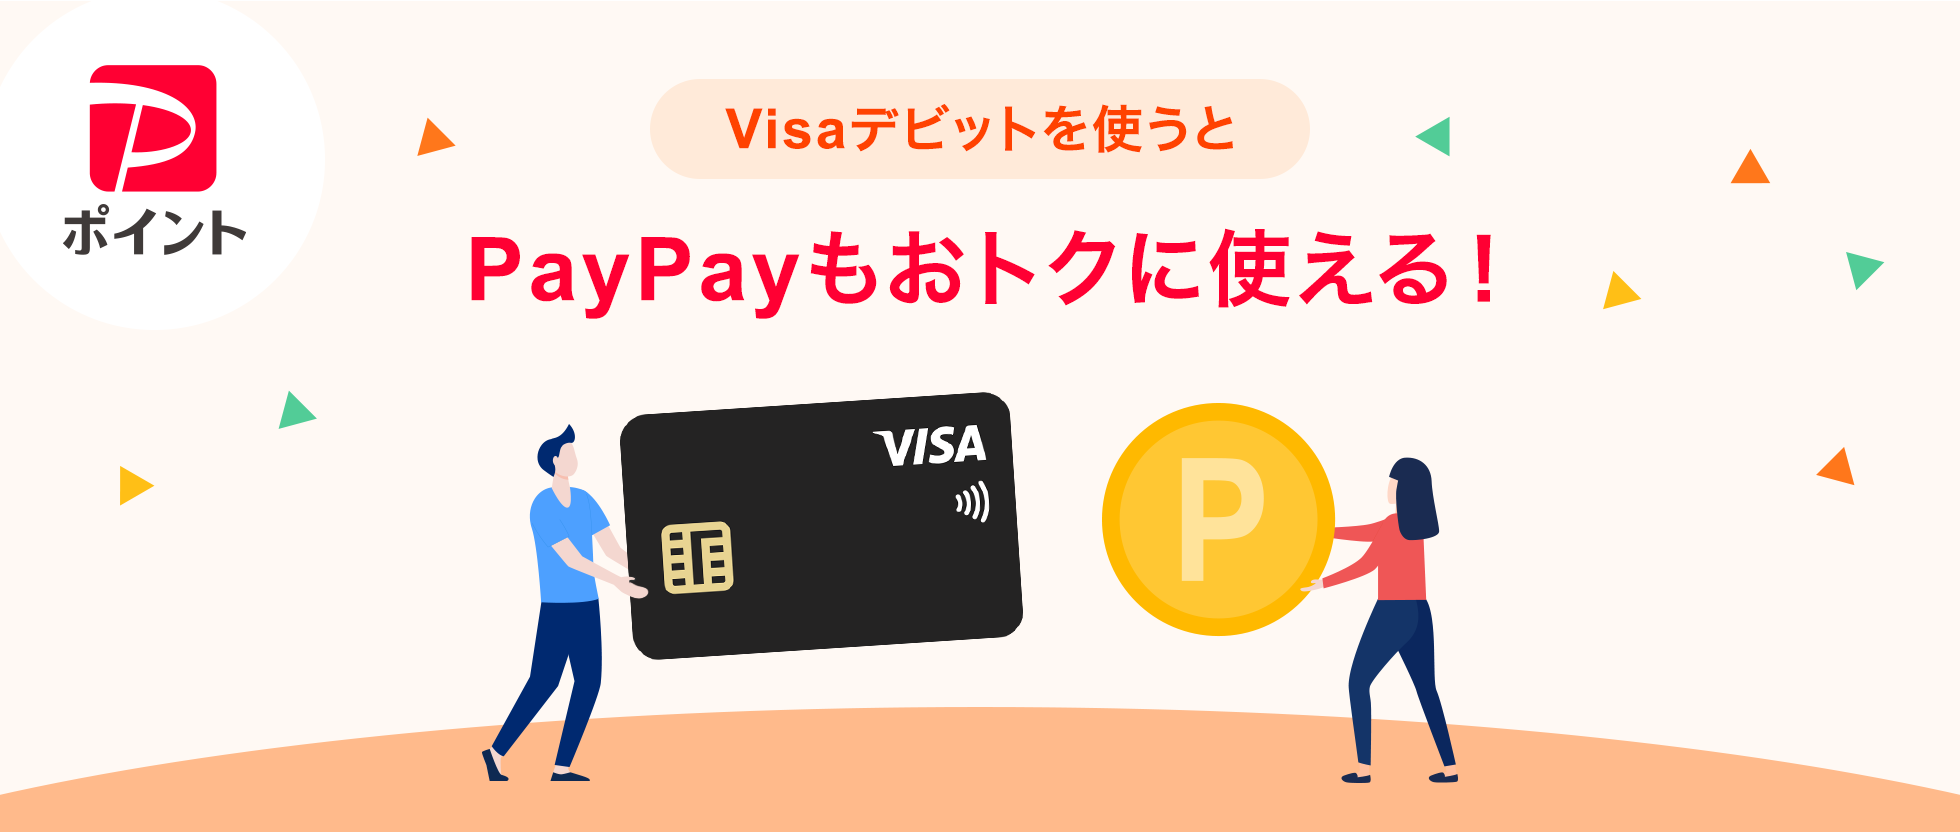 PayPay|Cg VisafrbggPayPaygNɎgI